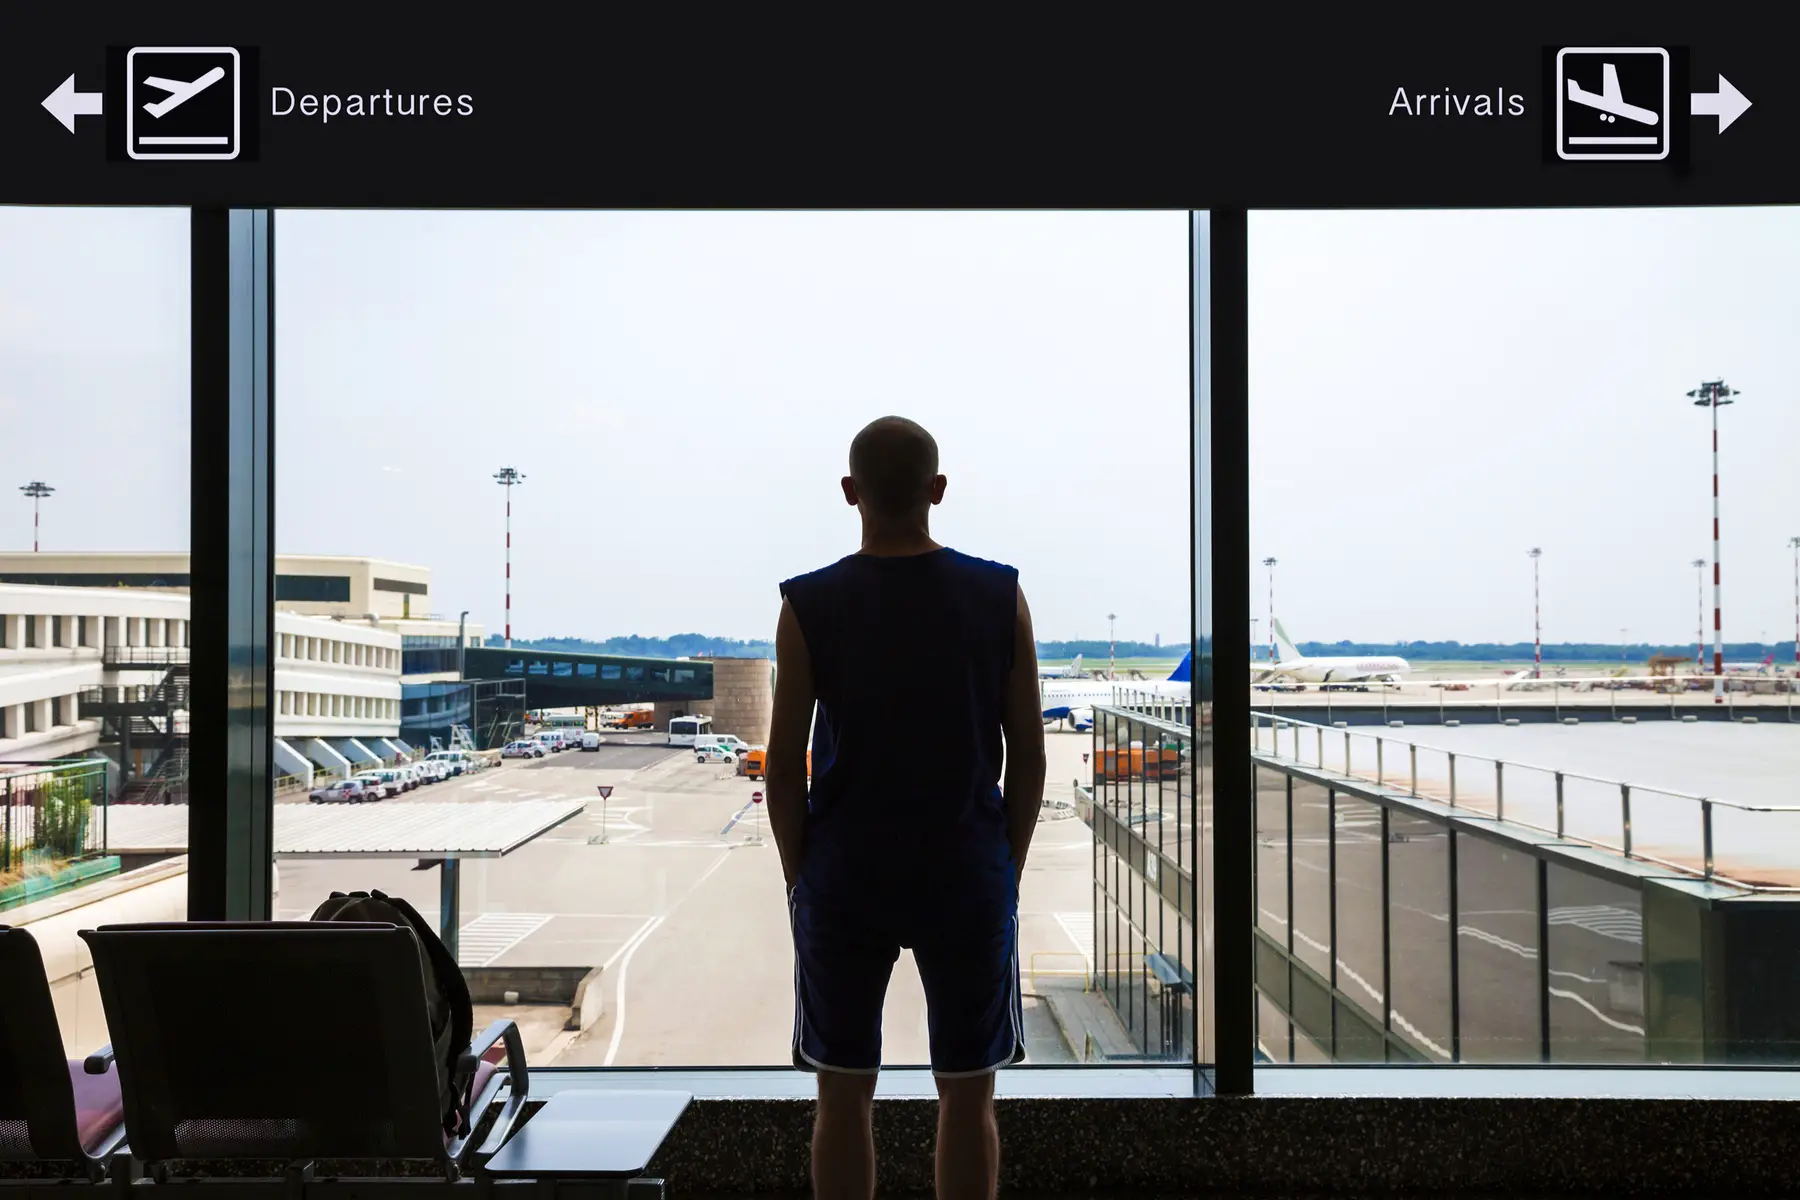 Man waiting at airport